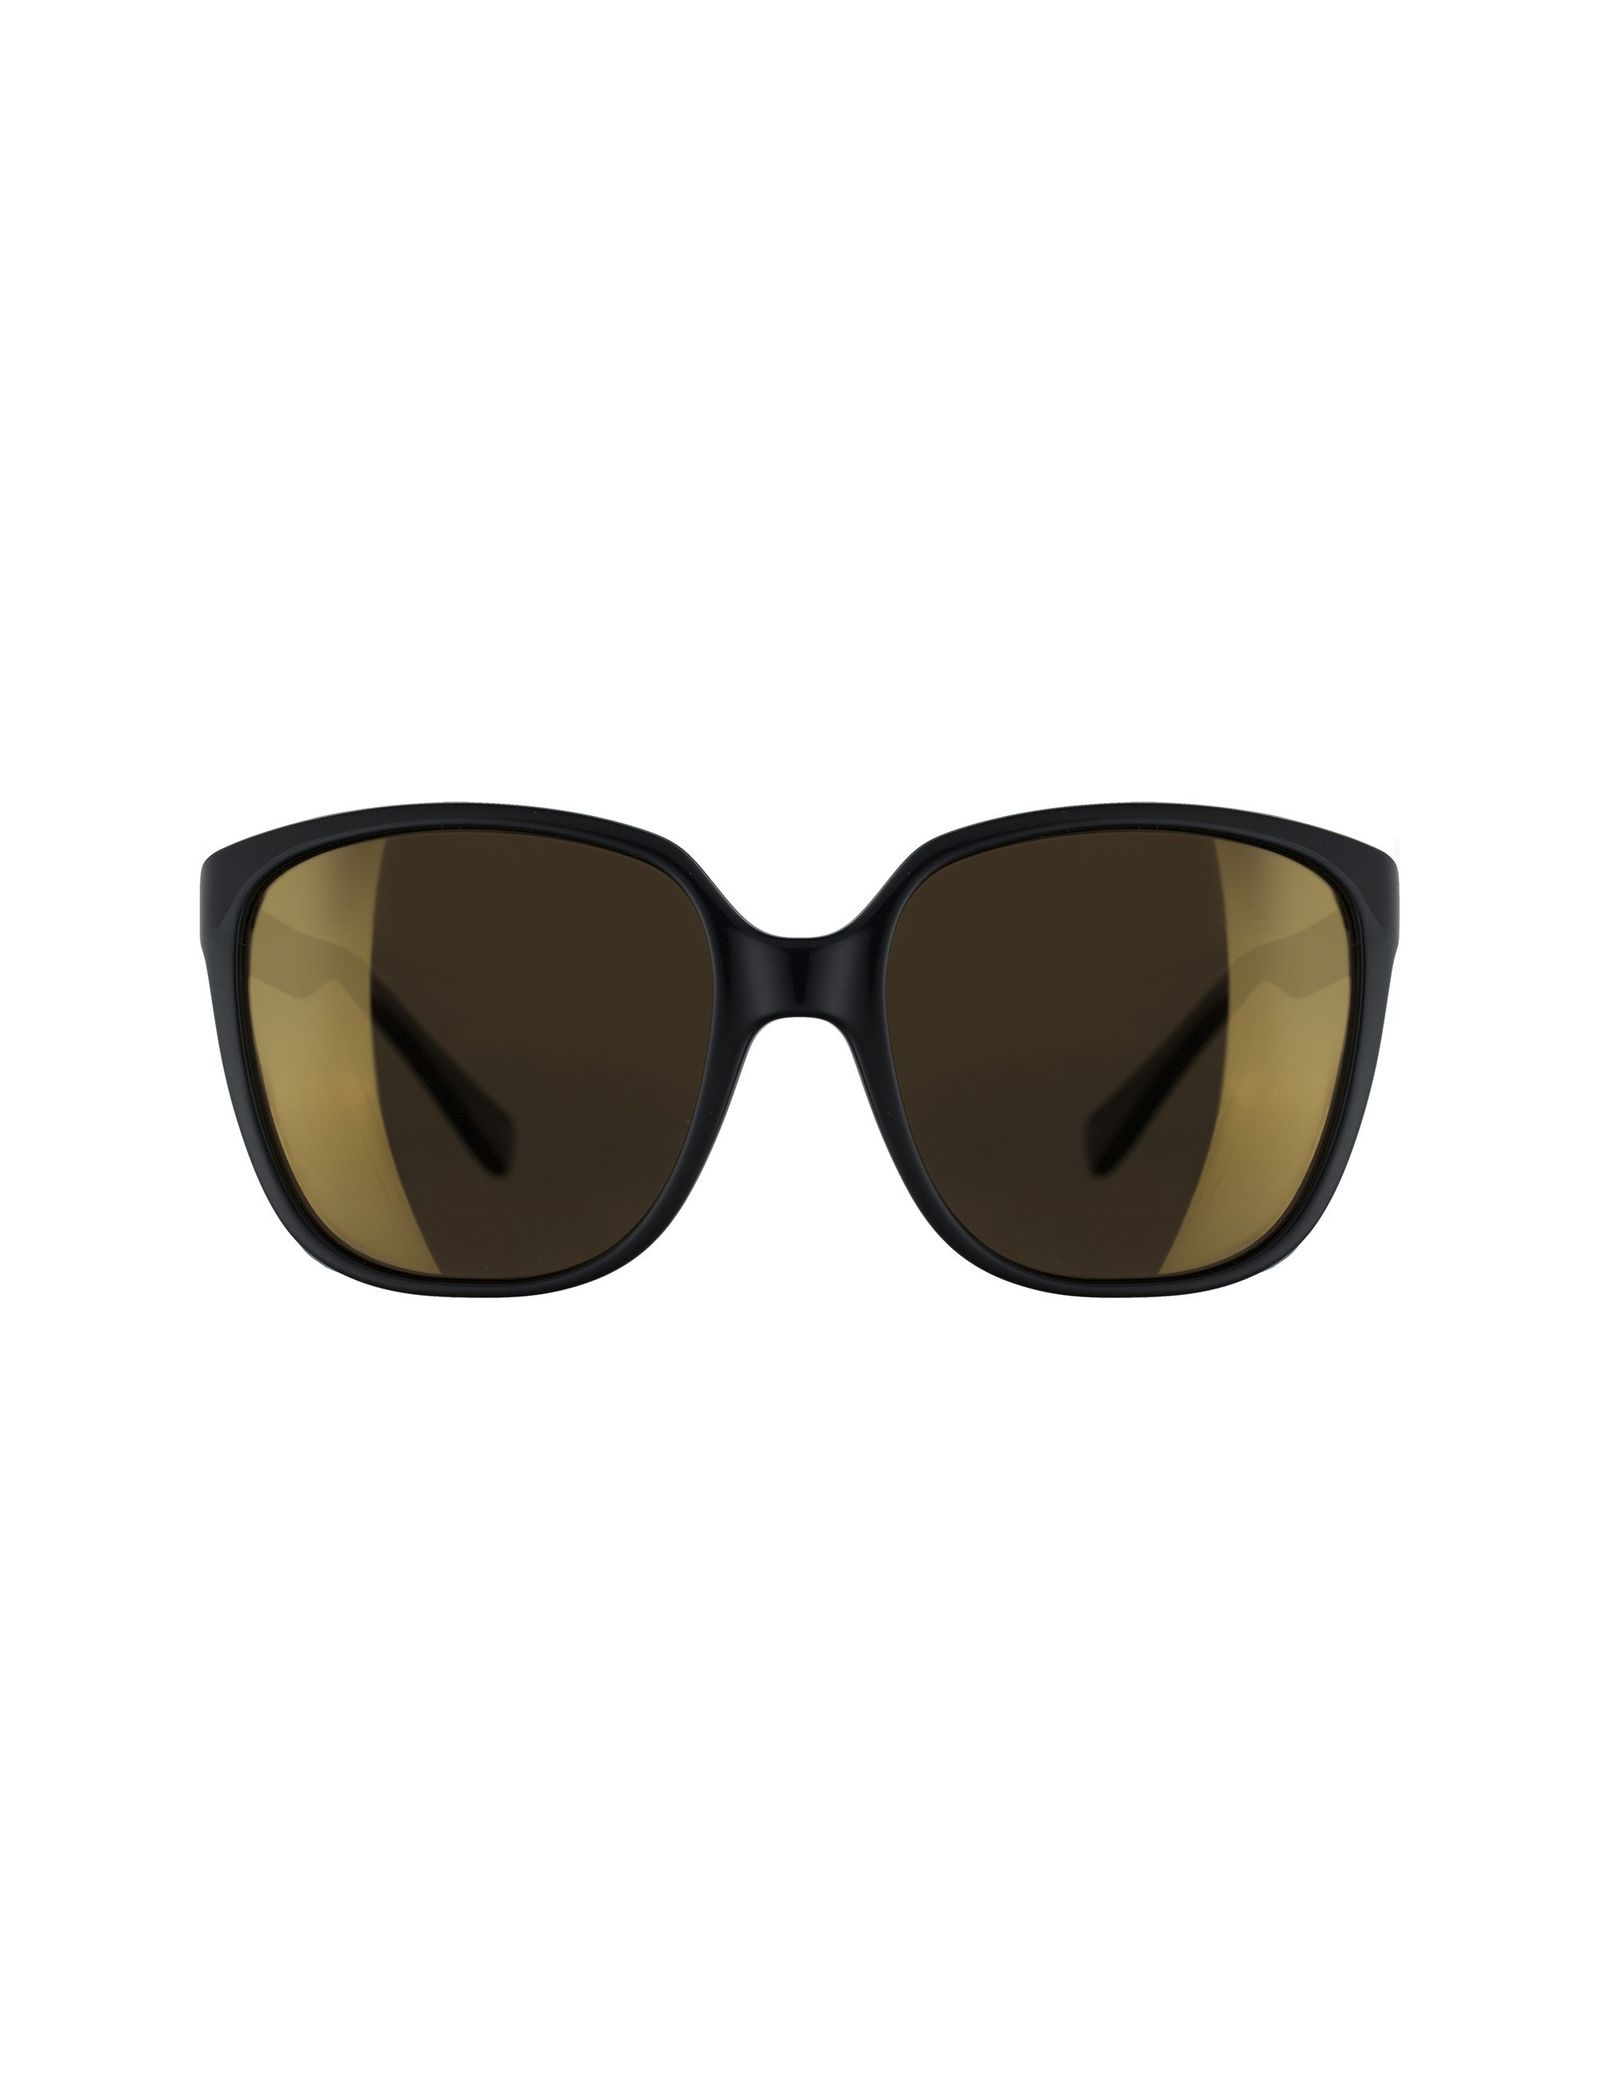 عینک آفتابی مربعی زنانه - تد بیکر - مشکي - 2